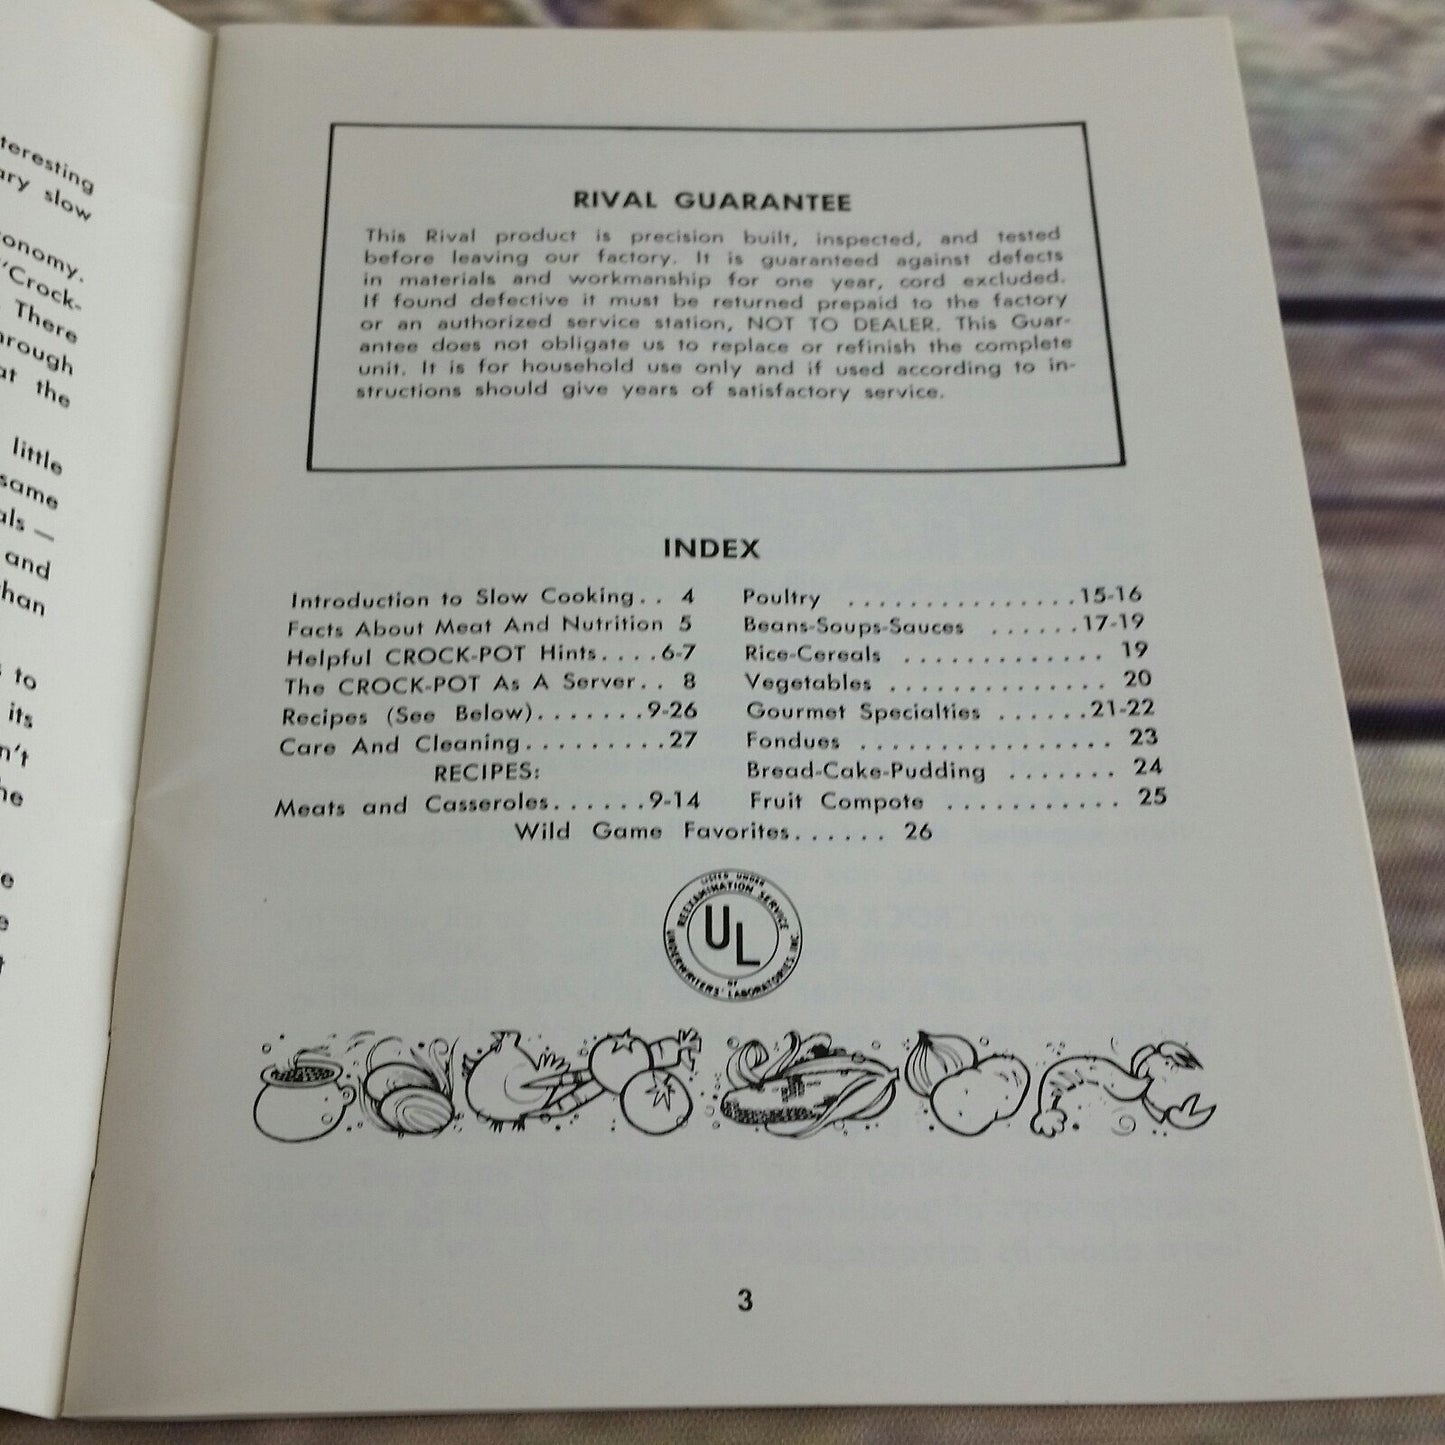 Vintage Rival Crock Pot Cookbook Owner's Manual Recipes Slow Cooker 1970s Paperback Booklet 427-399